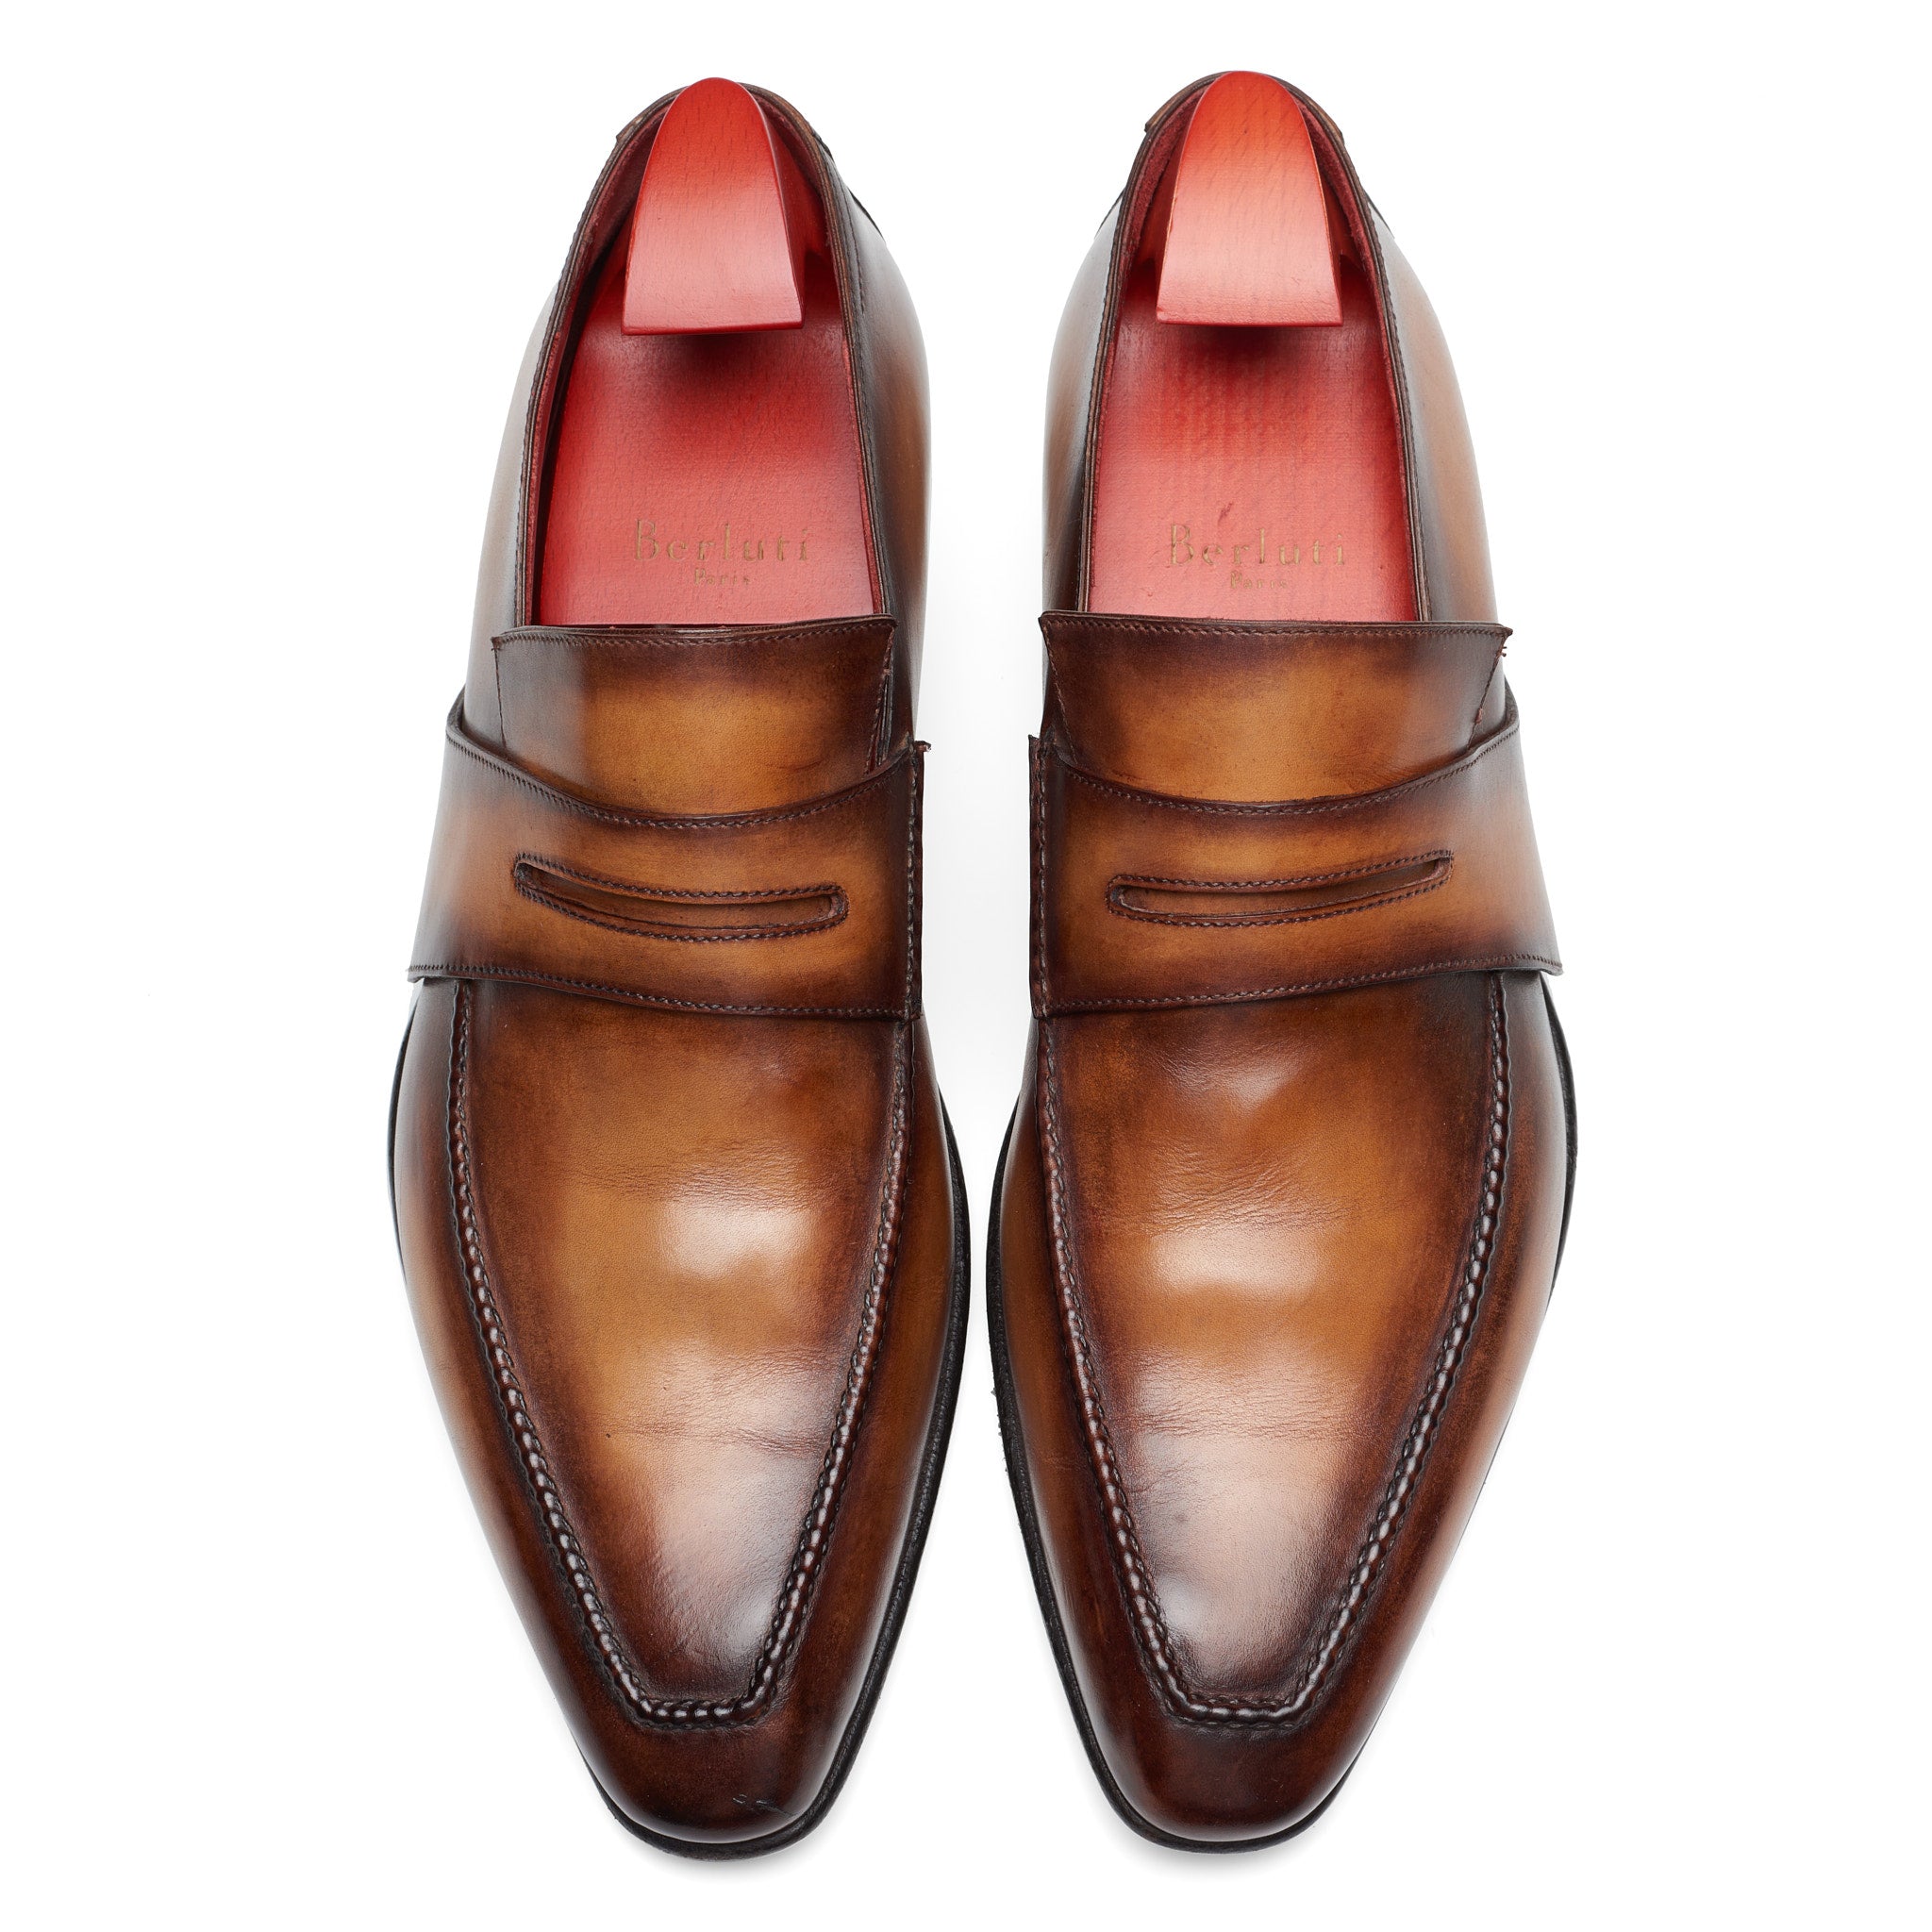 BERLUTI Art Andy Demesure Patina Venezia Calf Leather Custom Loafer Shoes UK 7.5 US 8.5 BERLUTI